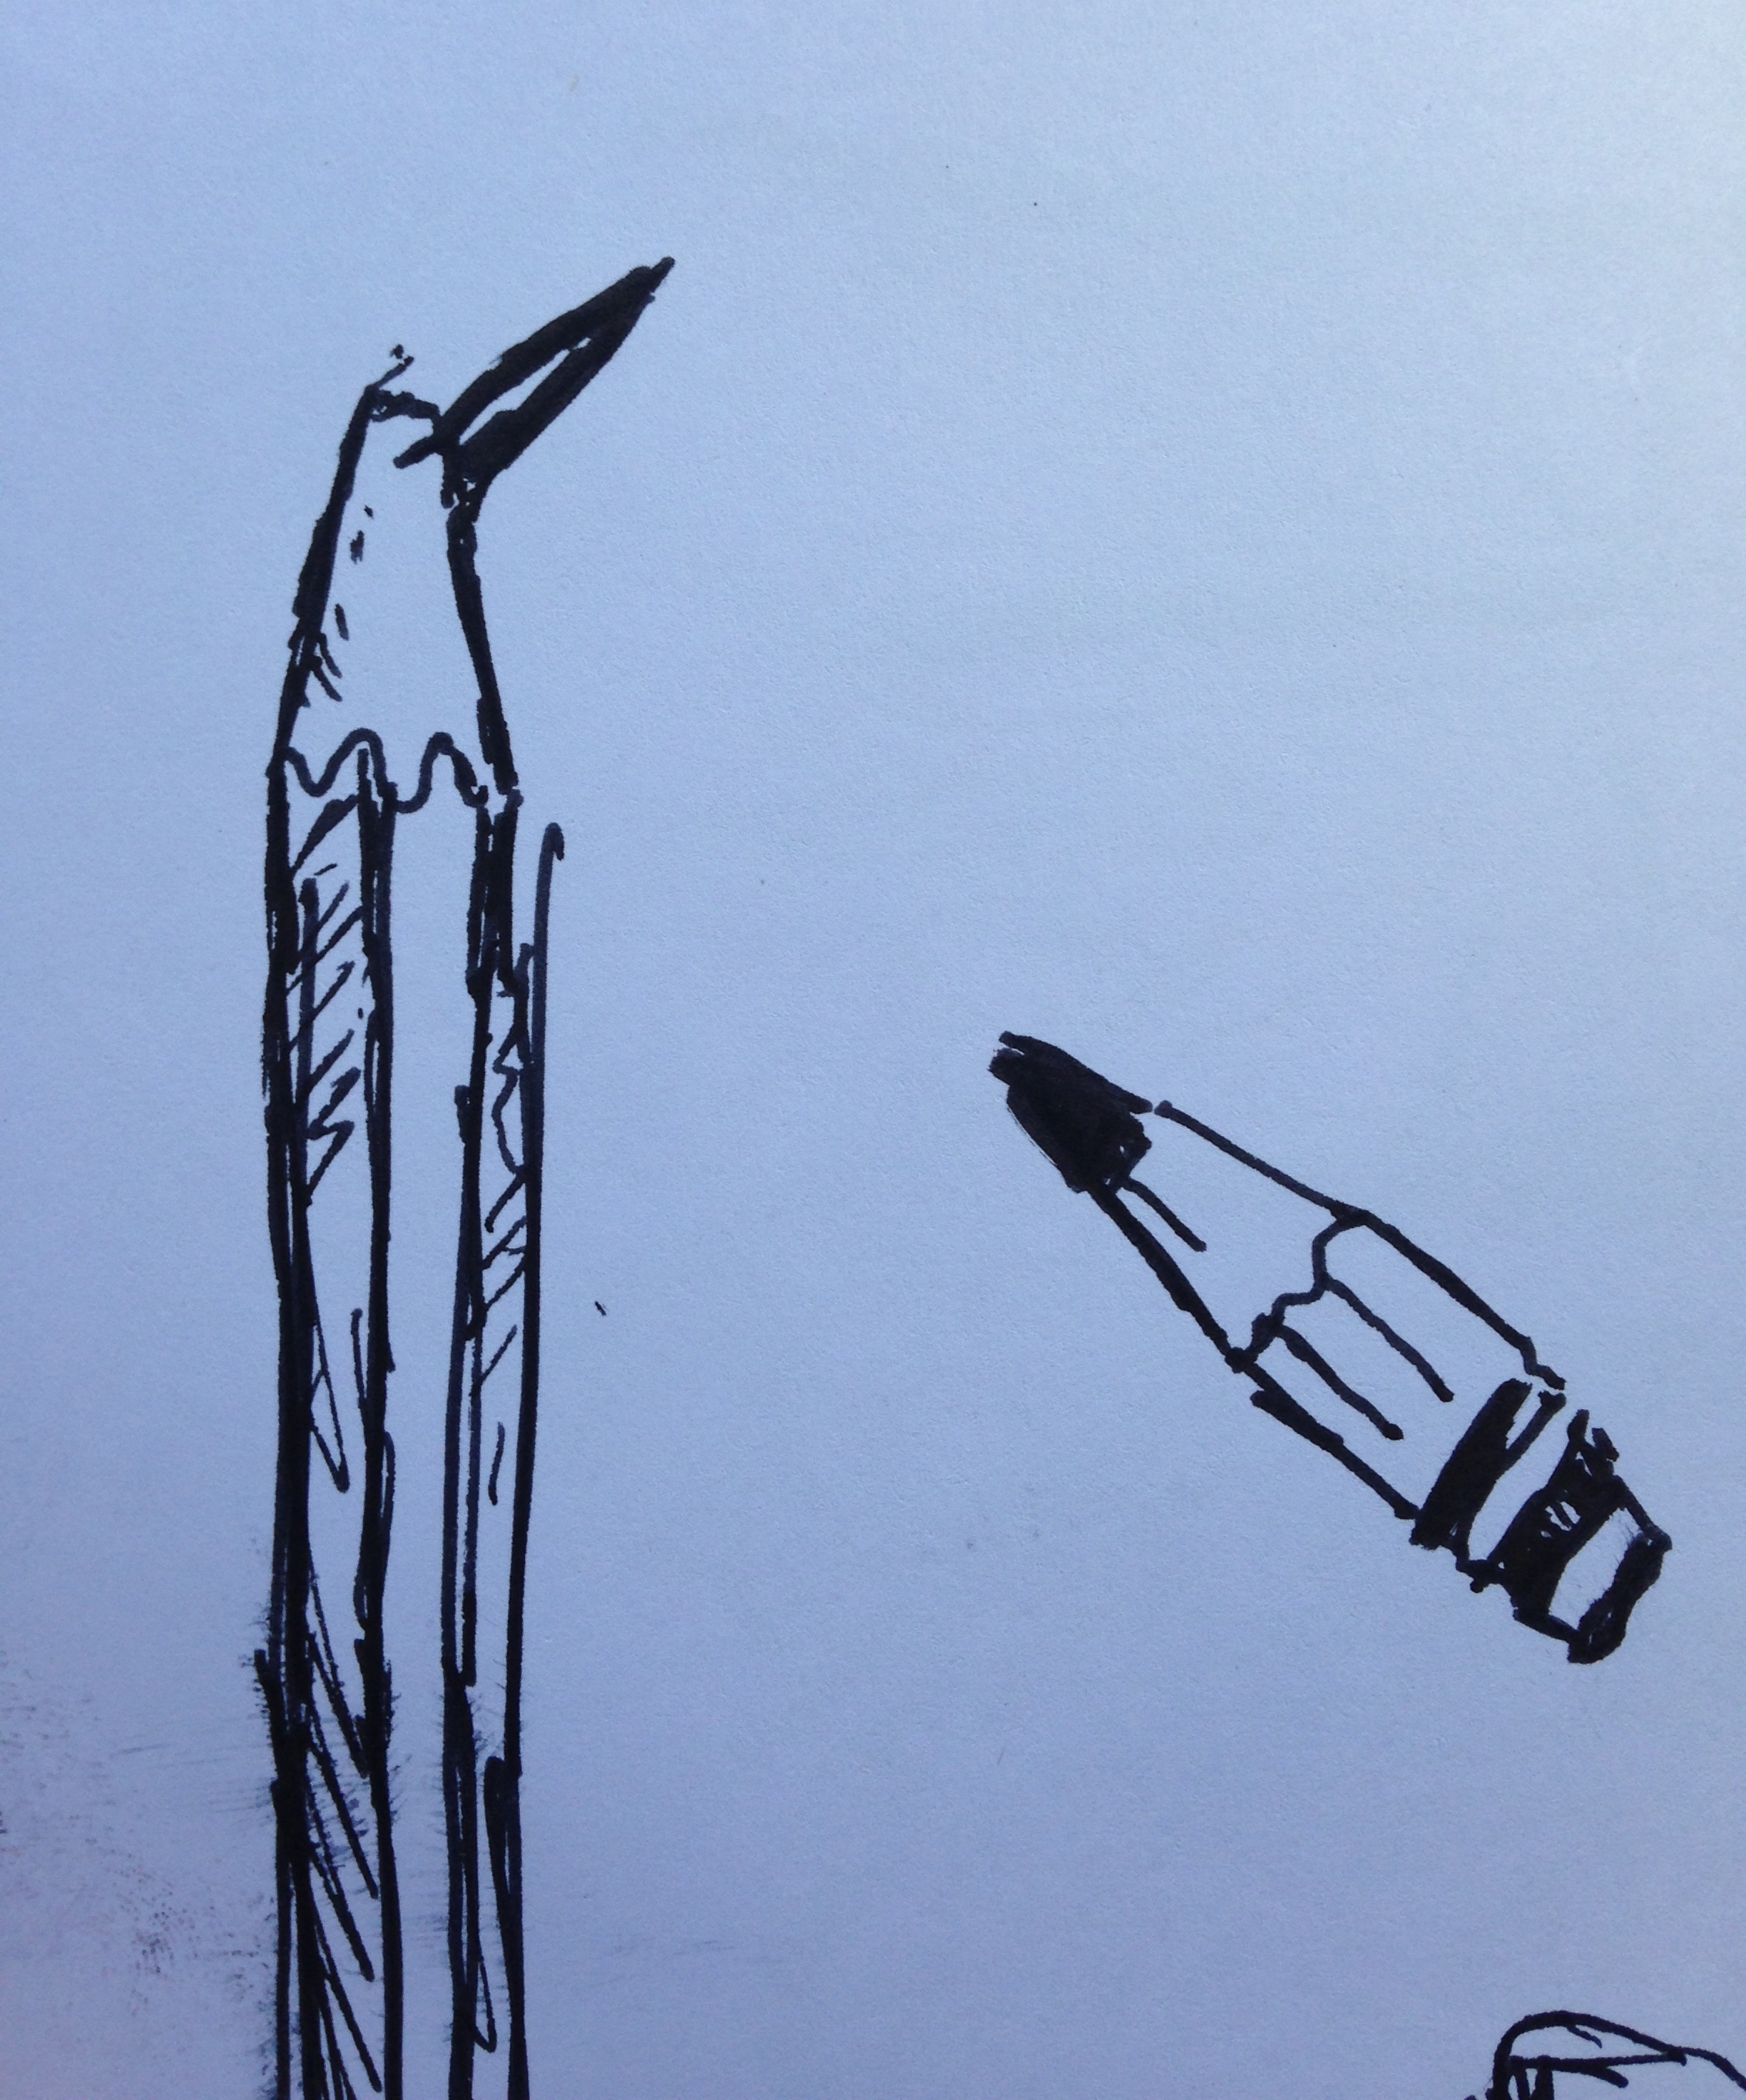 Broken pencil